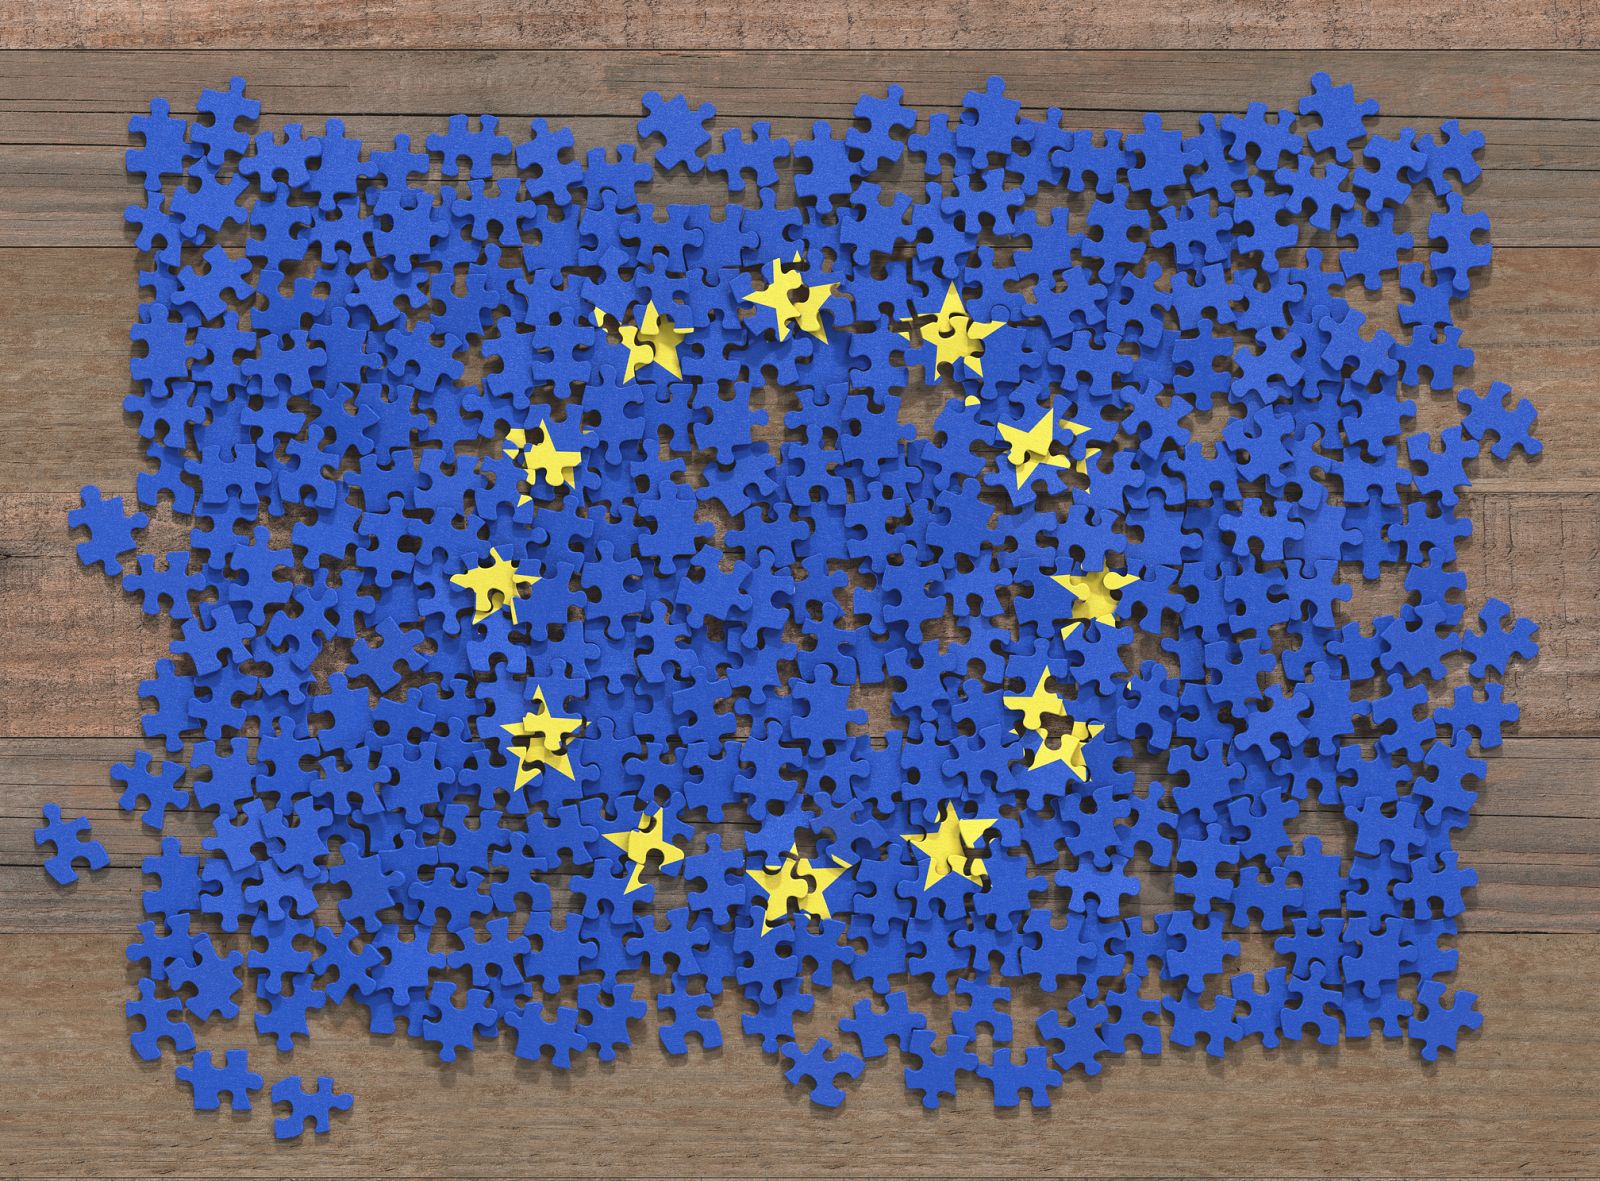 Puzle de la bandera de la Unión Europea